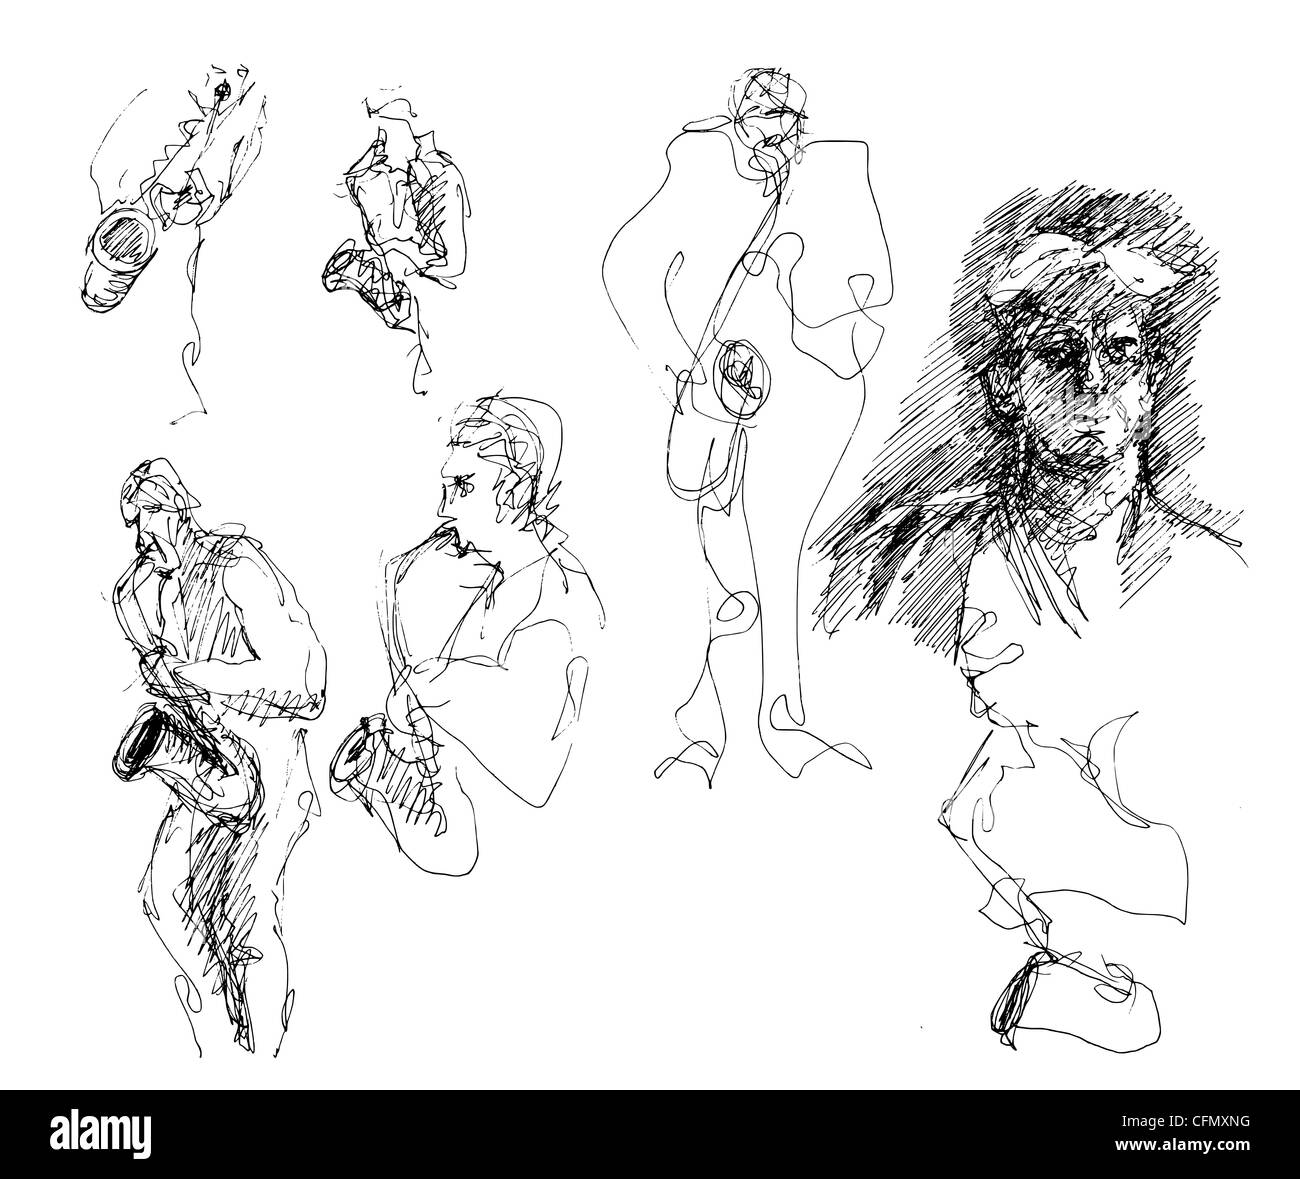 Eine Serie von 17 informellen handgezeichneten Skizzen/Doodles, die als Illustrationen zu verschiedenen Motiven verwendet werden. Witzig urkomisch seltsam albern oder tödlich ernst. Stockfoto